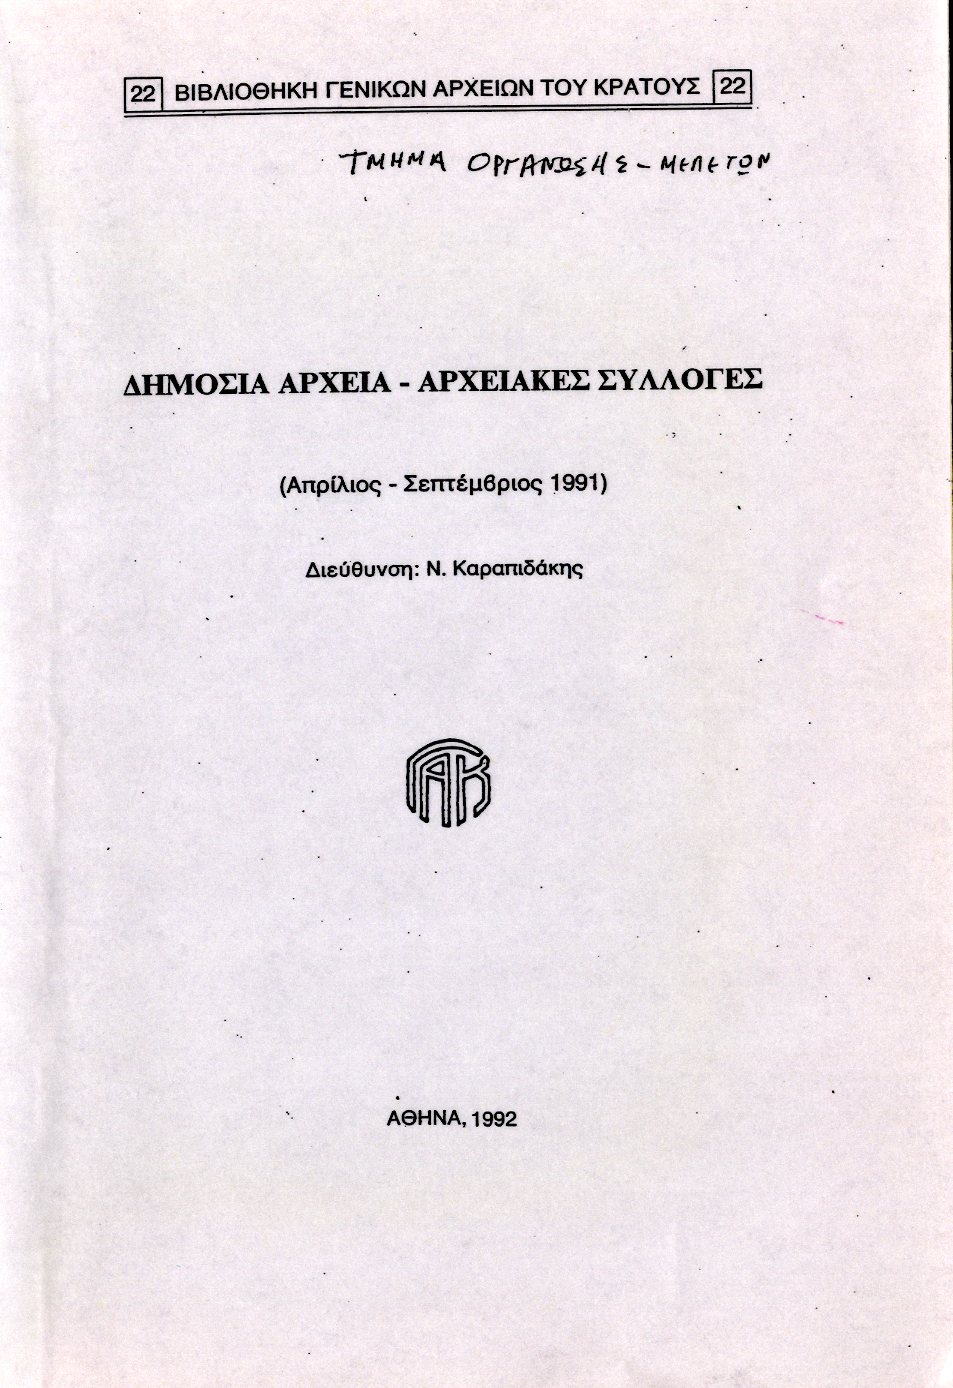 Εξώφυλλο από ΔΗΜΟΣΙΑ ΑΡΧΕΙΑ - ΑΡΧΕΙΑΚΕΣ ΣΥΛΛΟΓΕΣ (Απρίλιος - Σεπτέμβριος 1991)